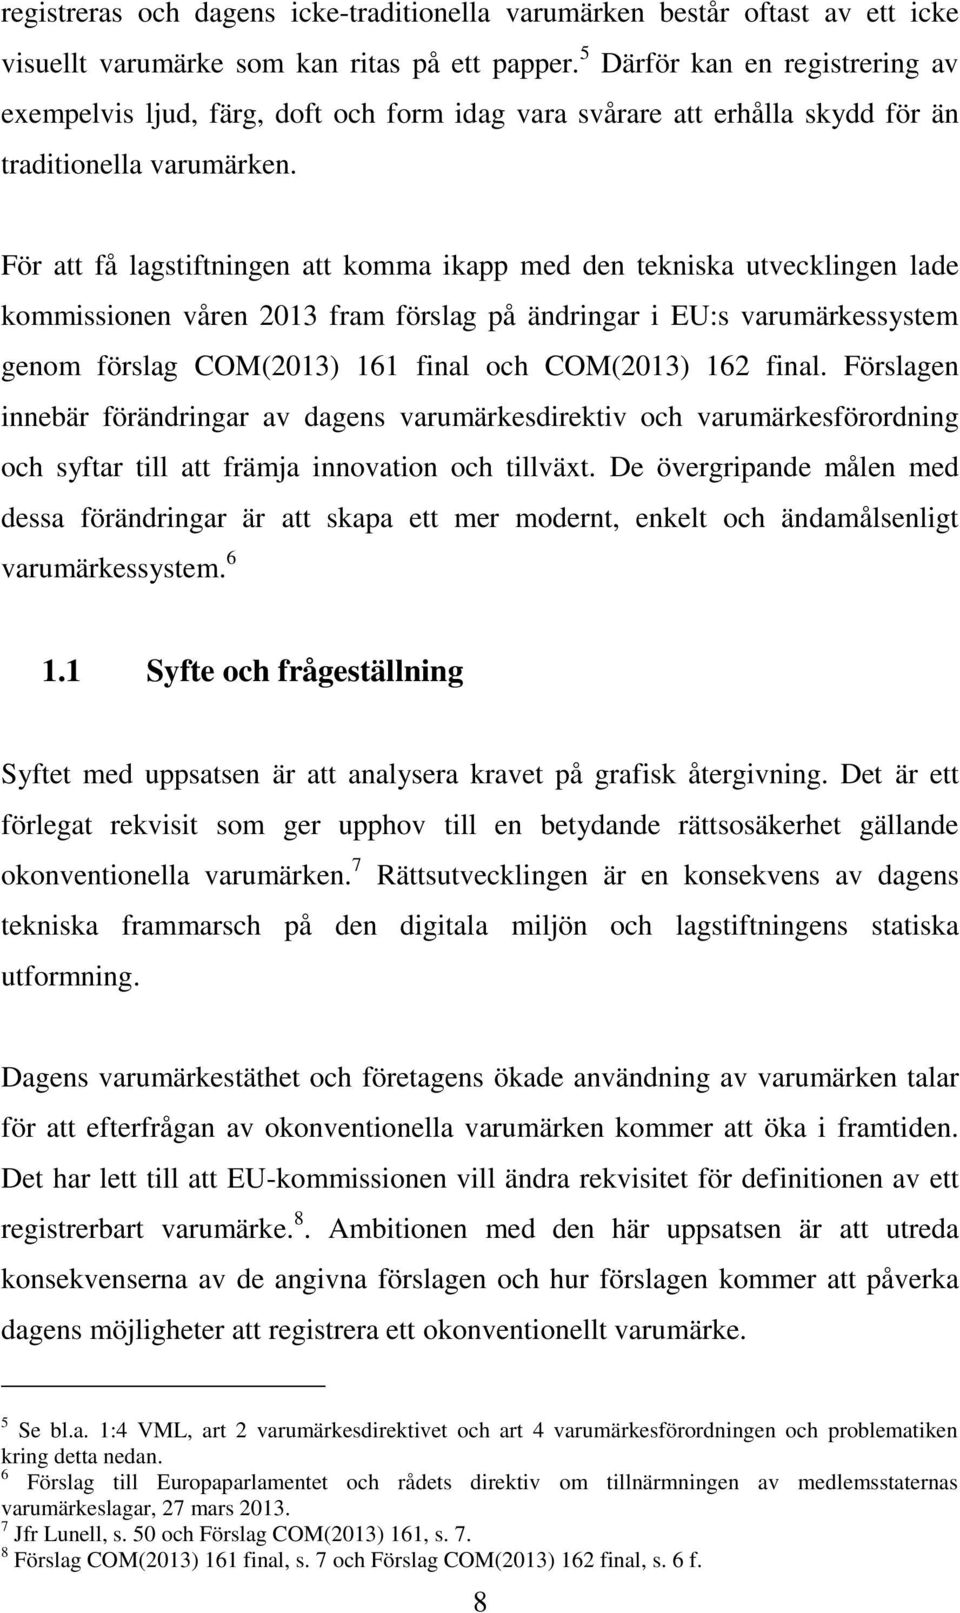 För att få lagstiftningen att komma ikapp med den tekniska utvecklingen lade kommissionen våren 2013 fram förslag på ändringar i EU:s varumärkessystem genom förslag COM(2013) 161 final och COM(2013)